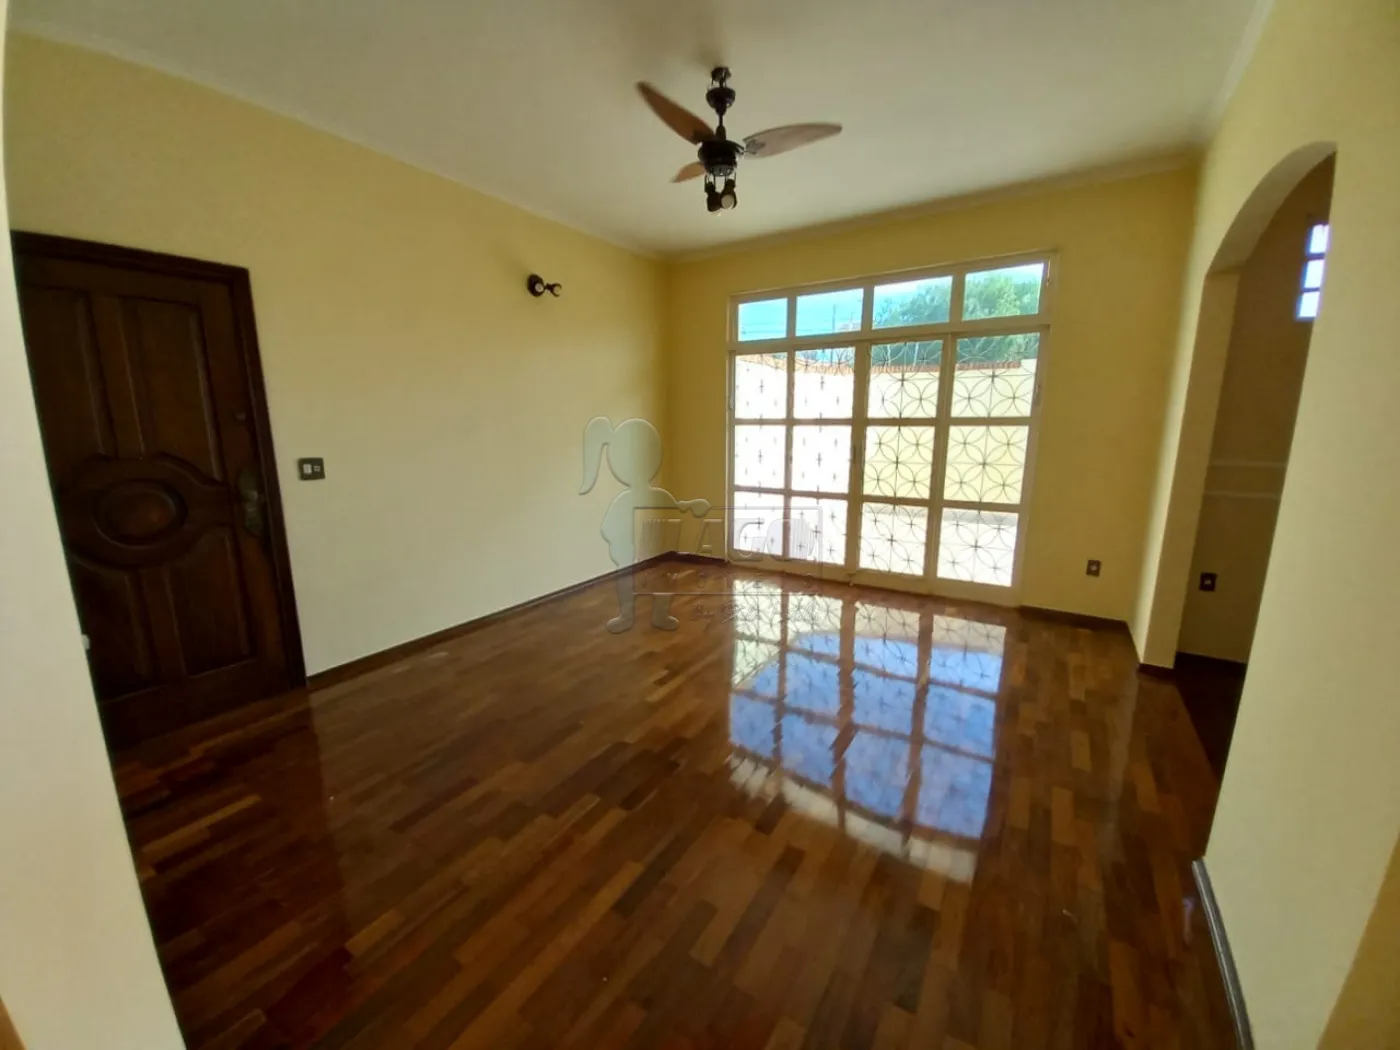 Comprar Casas / Padrão em Ribeirão Preto R$ 742.000,00 - Foto 4